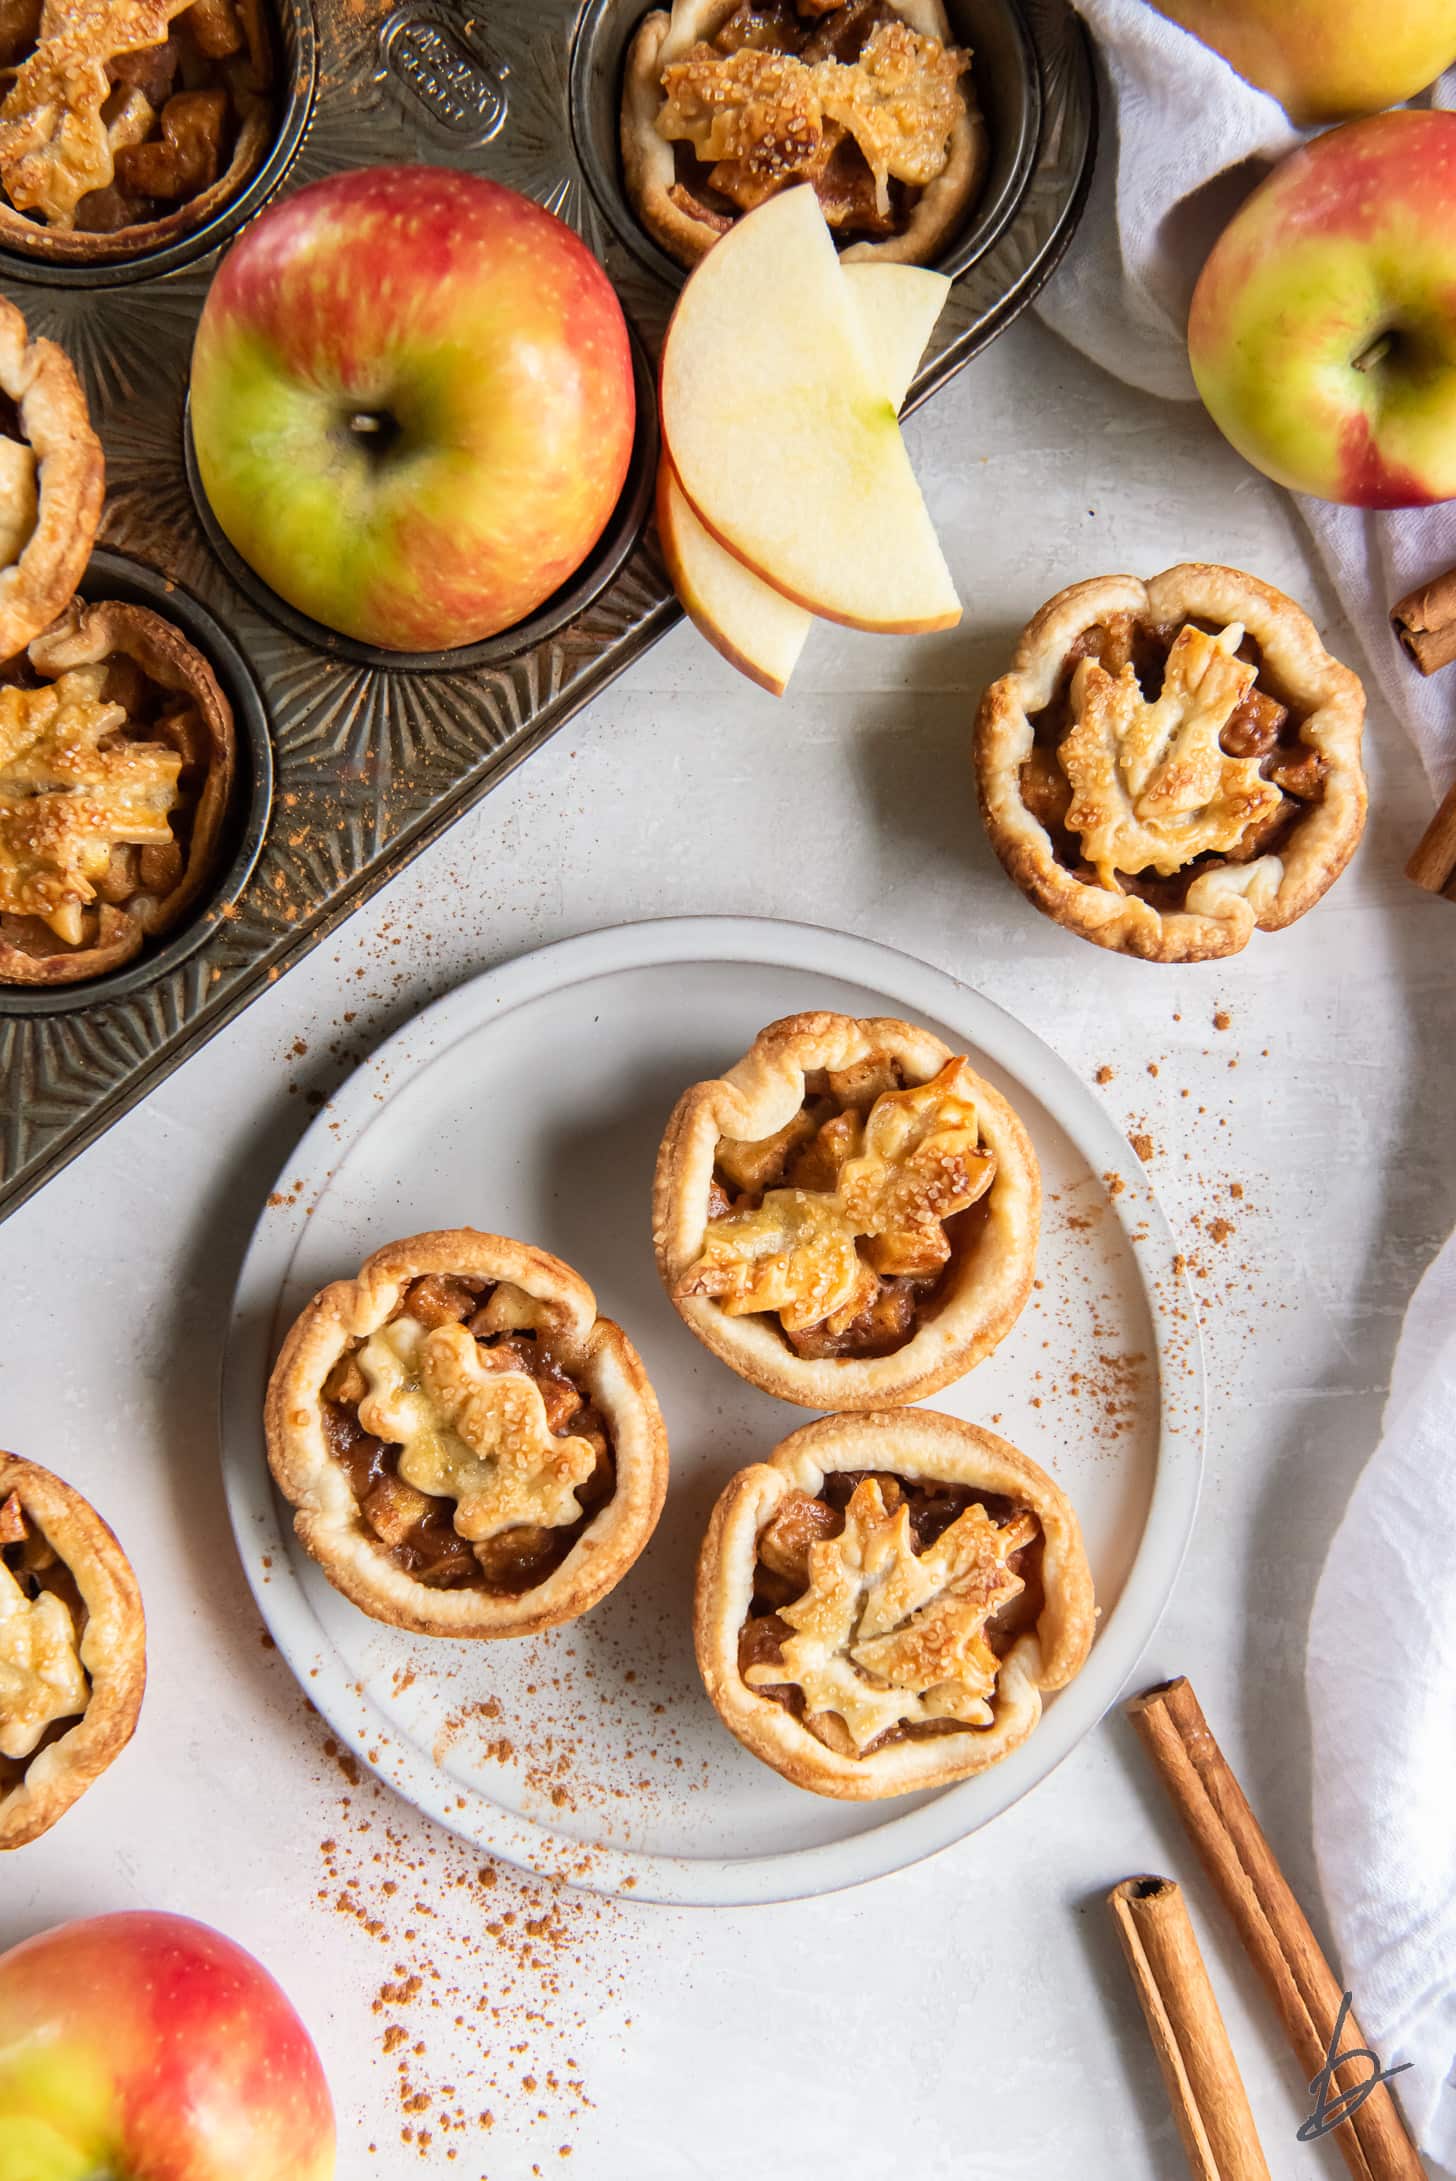 mini apple pies on plate next to apple slices and cinnamon sticks.